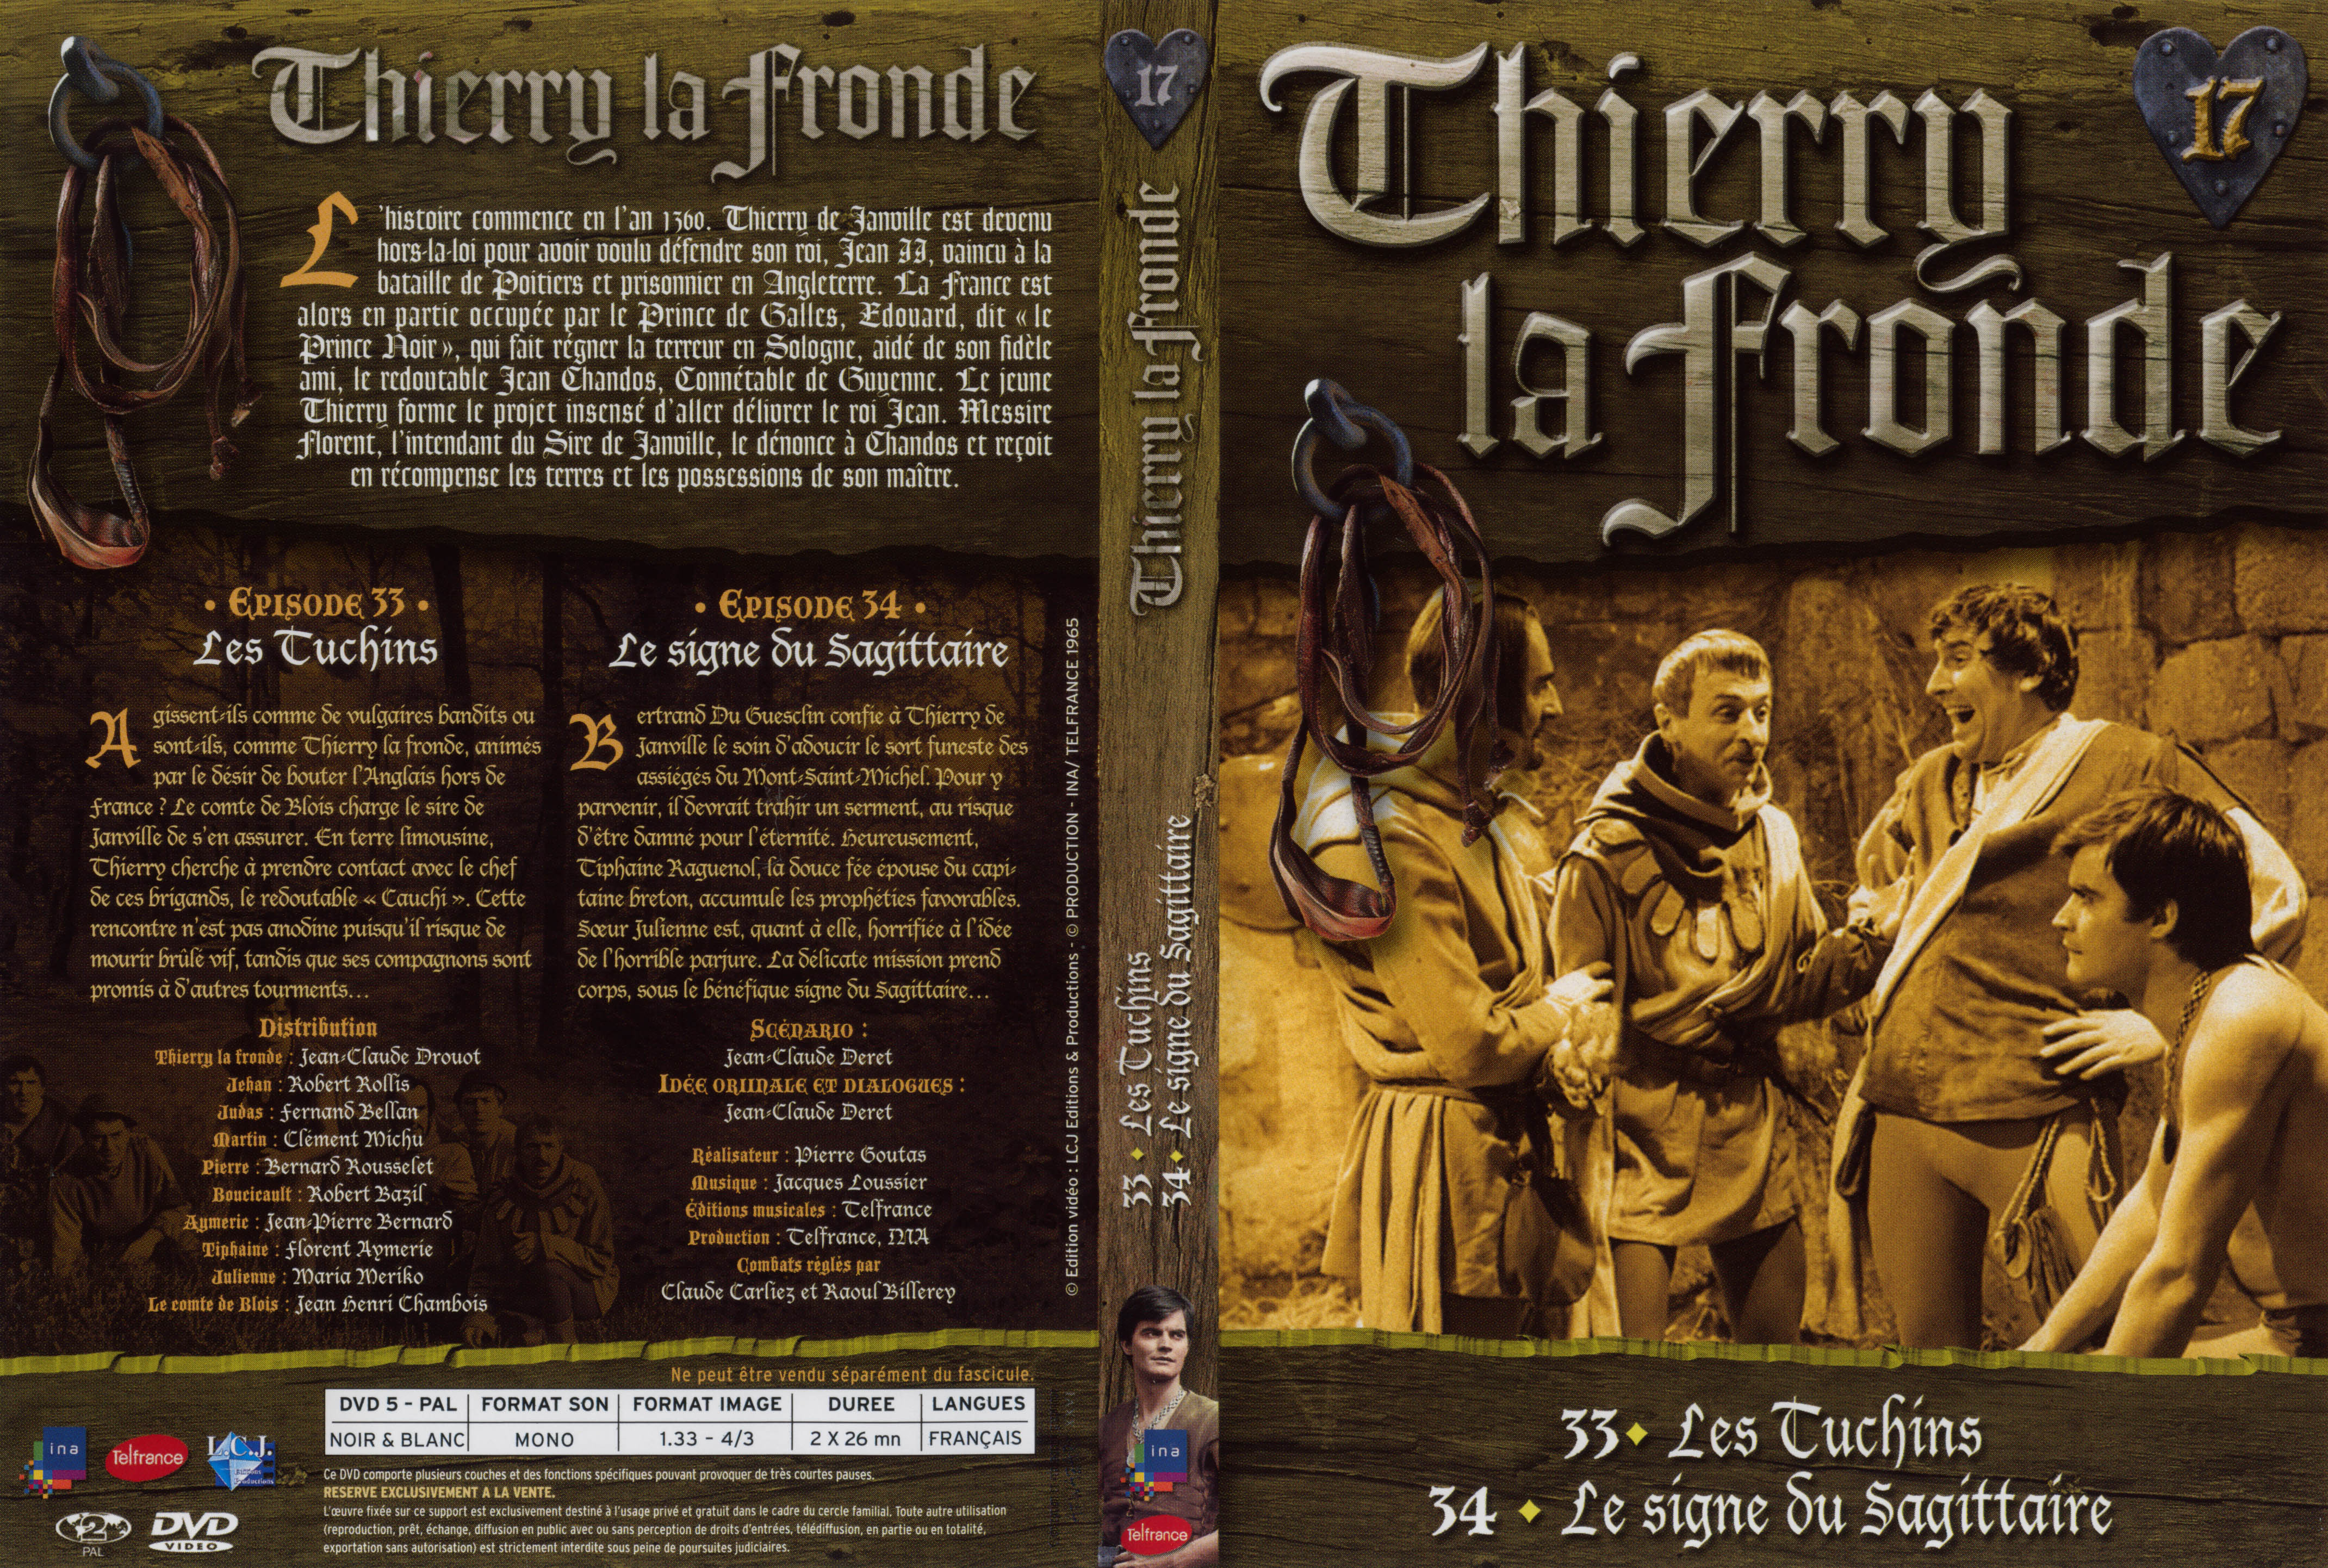 Jaquette DVD Thierry la Fronde vol 17